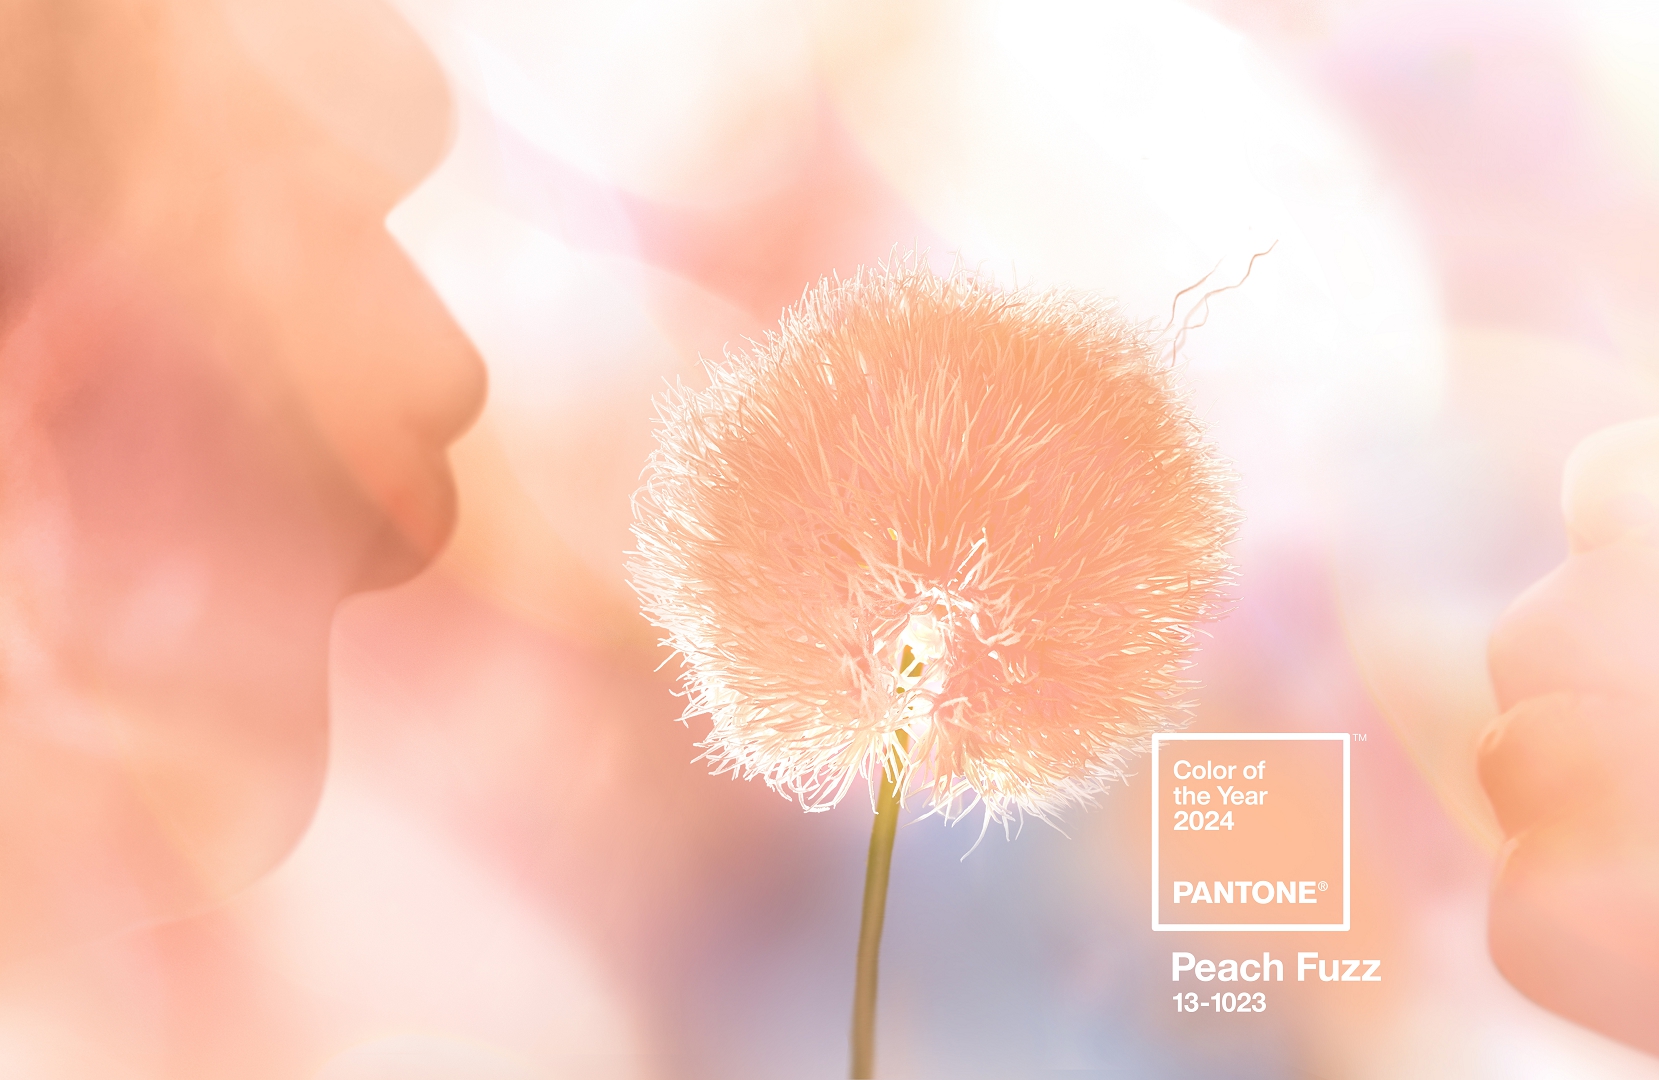 Pútko na kľúče L PANTONE Peach Fuzz 13-1023 (farba roku 2024)